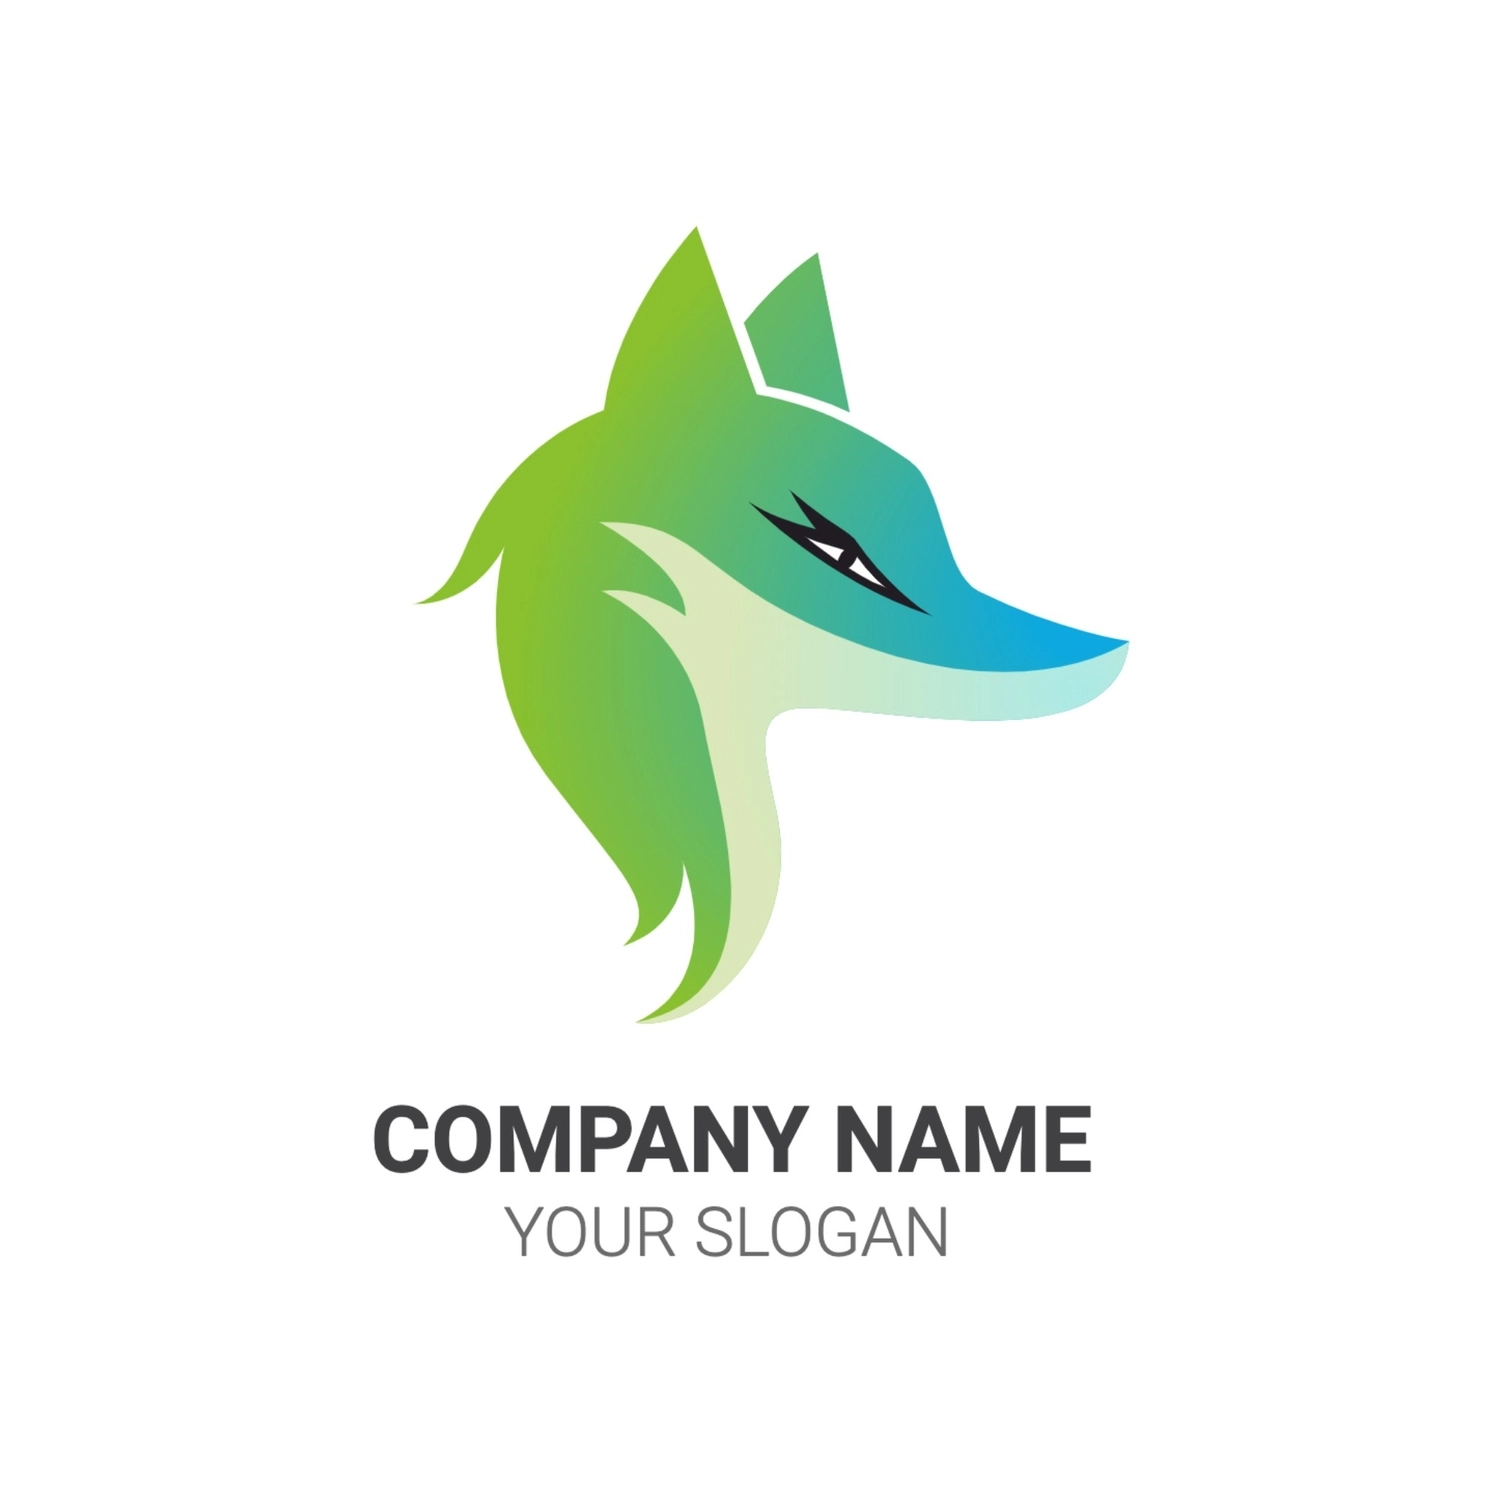 オオカミのロゴ, グラデーション, 作成, デザイン, ロゴテンプレート